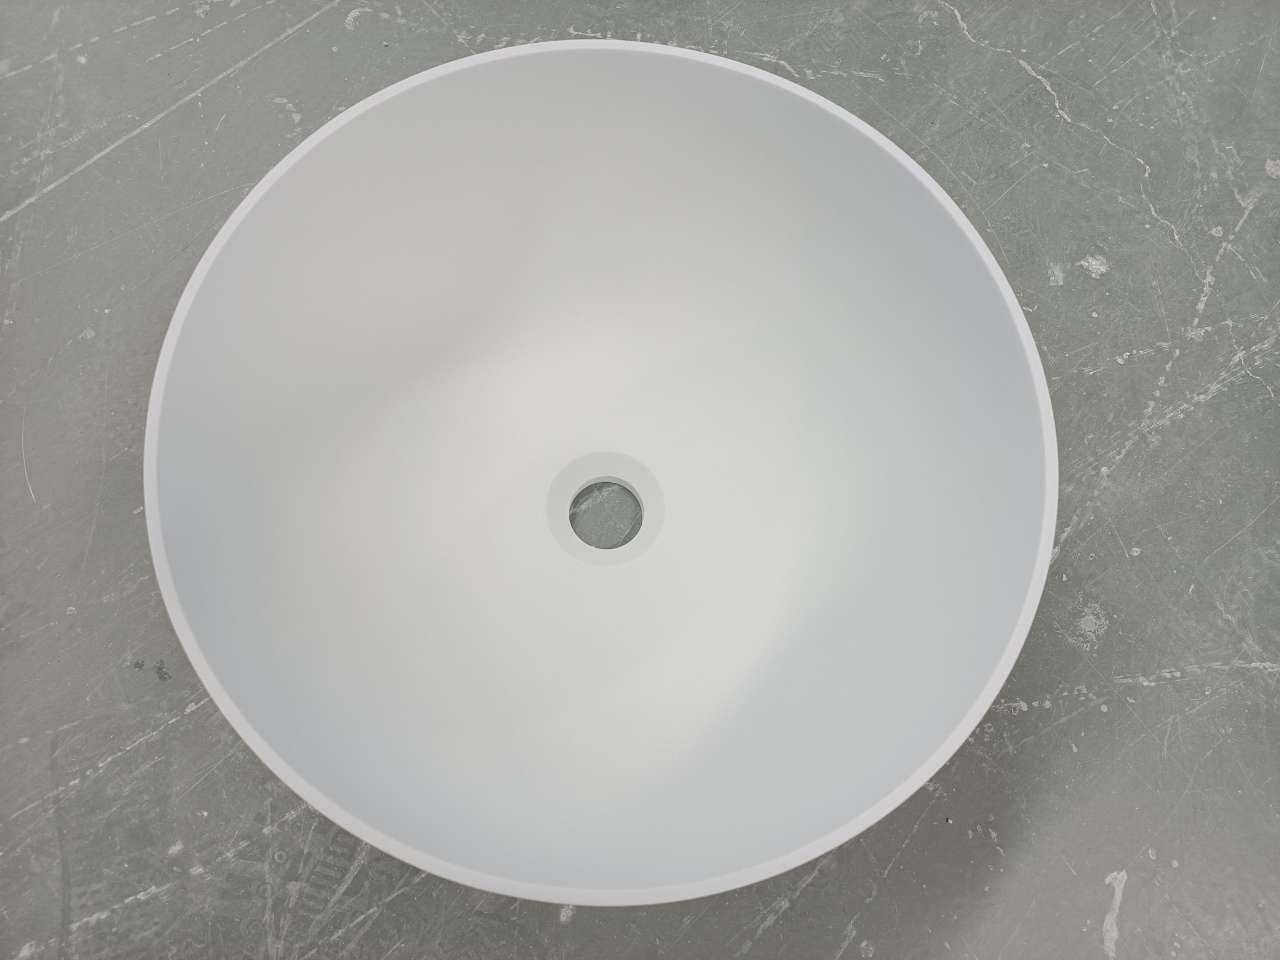 Tui semi-recessed round 400mm basin